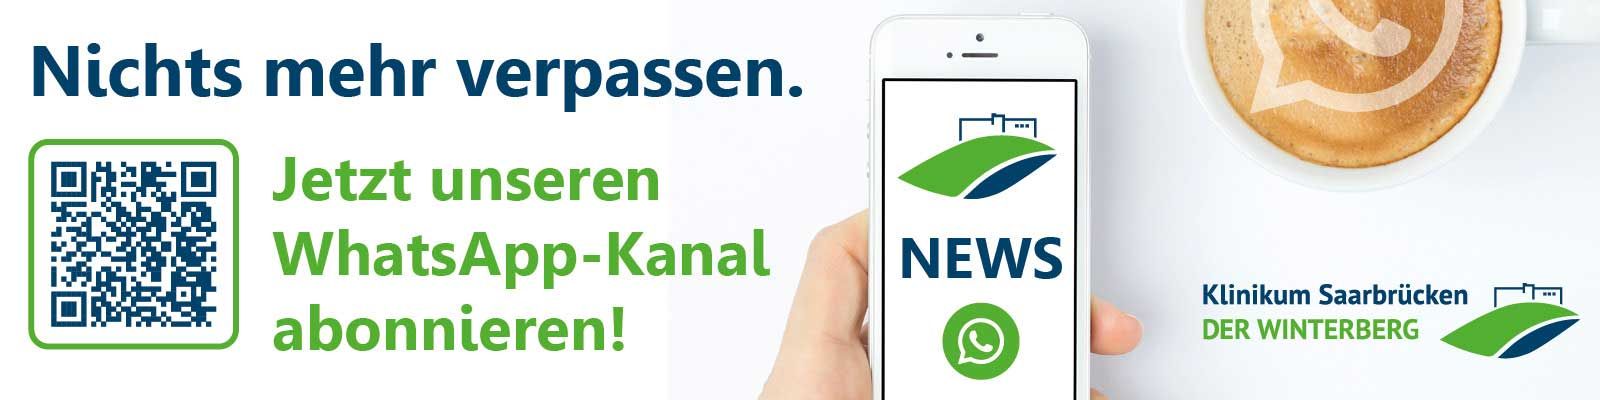 Kaffeetasse und Handy mit WhatsApp-Symbol: Keine News mehr verpassen - jetzt den WhatsApp-Kanal des Klinikums Saarbrücken abonnieren Klinikum_Saarbruecken_WhatsApp_Kanal_Homepage_Slider.jpg